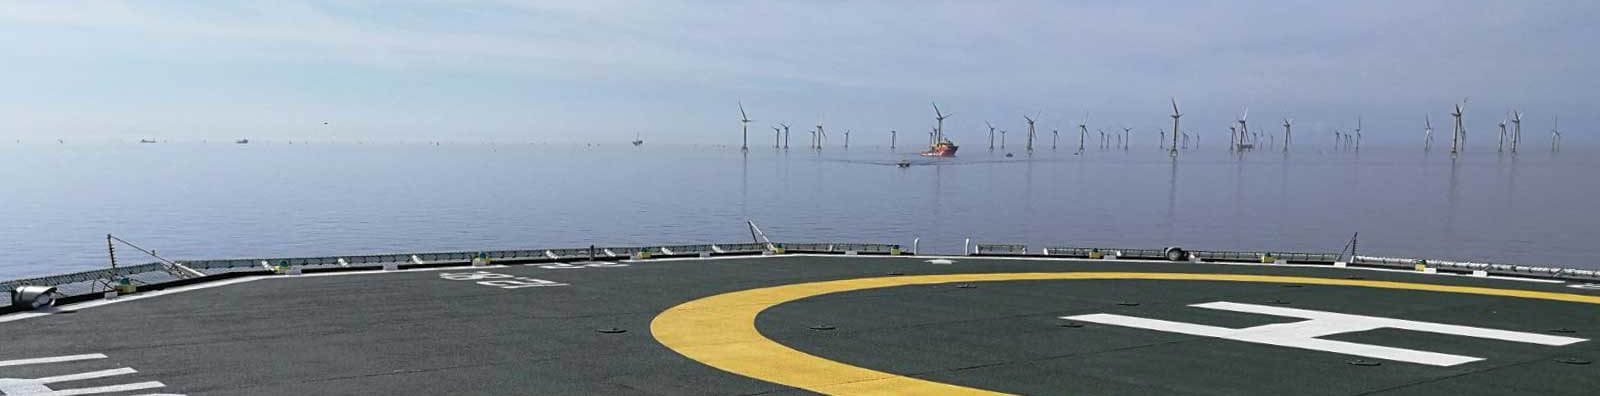 Bridgemans enters agreement with MHI Vestas Offshore Wind